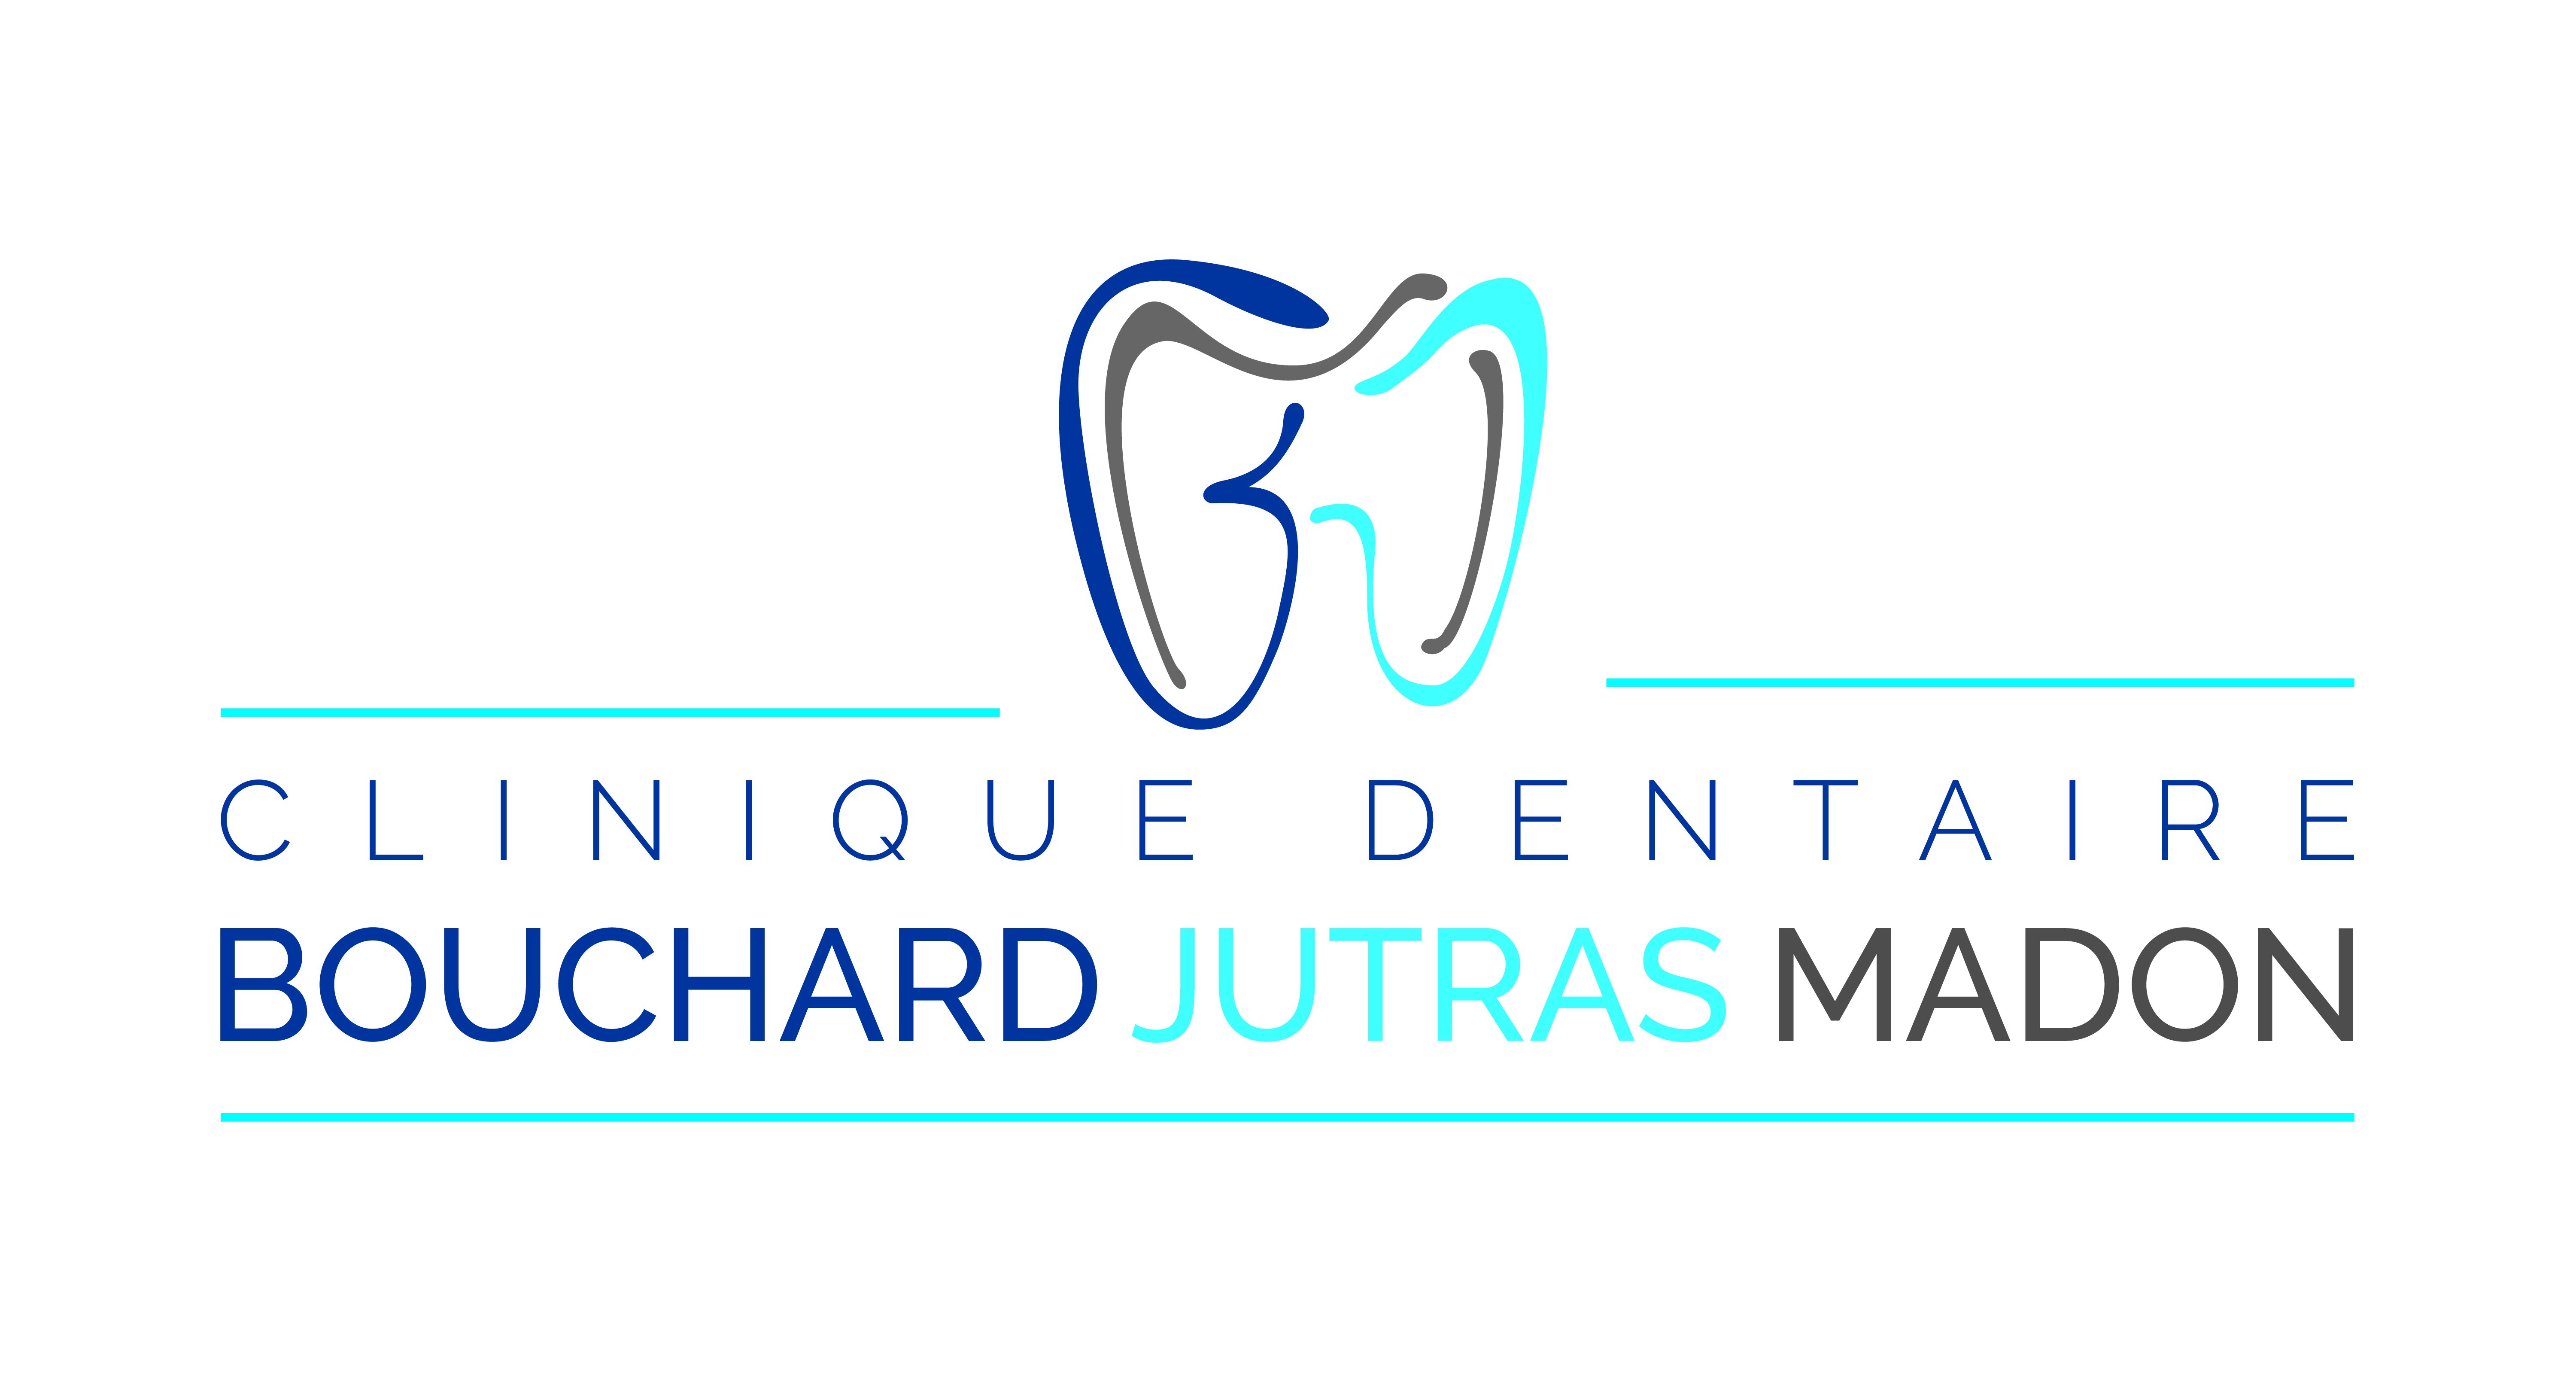 logo_clinique dentaire bouchard jutras madonfondecran.jpg